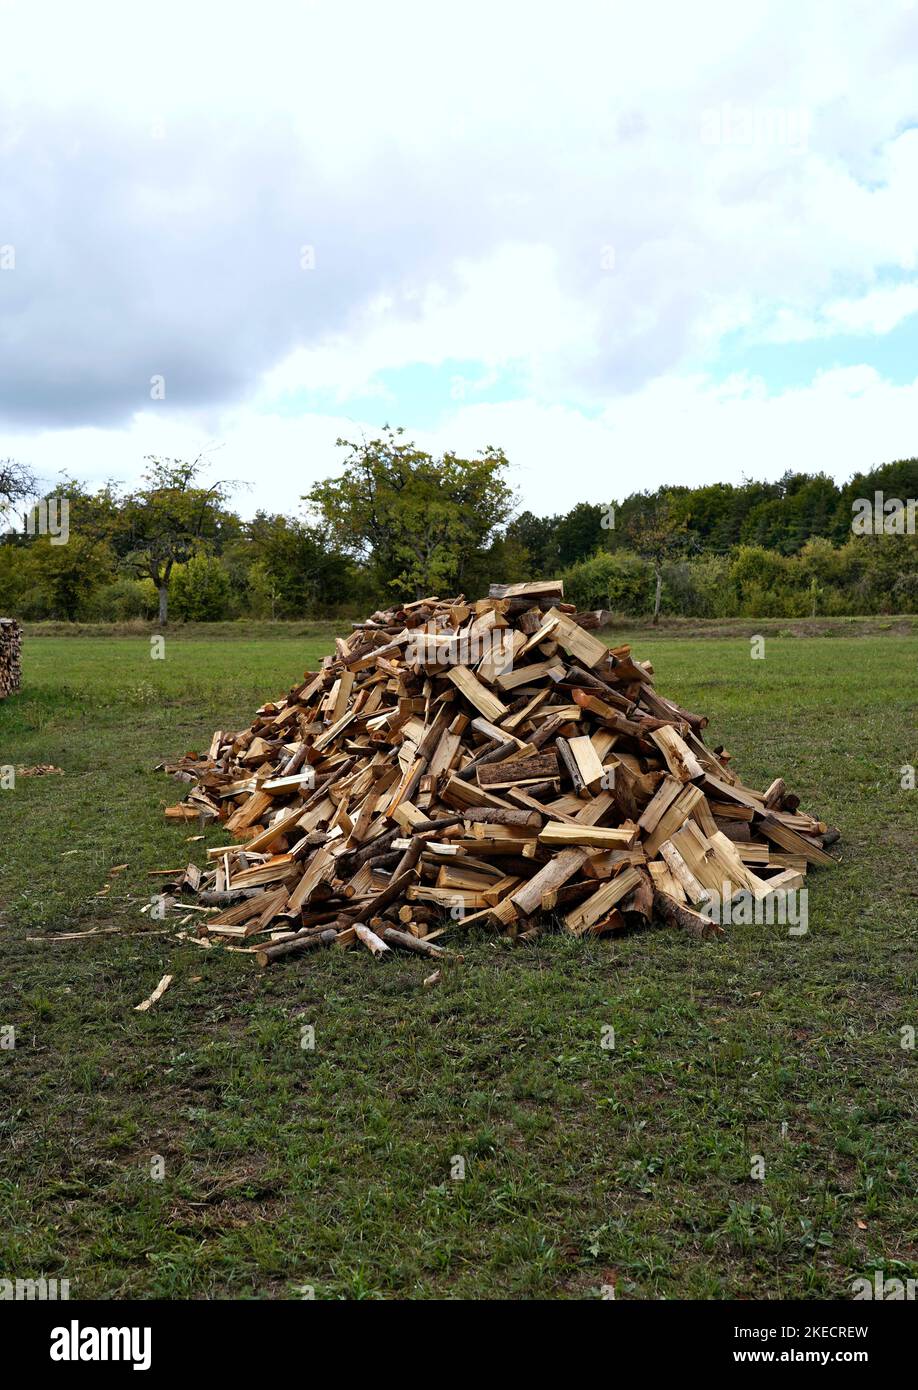 Germania, Baviera, agricoltura, prato, palo con legna da ardere, tronchi spaccati pronti per stufa Foto Stock